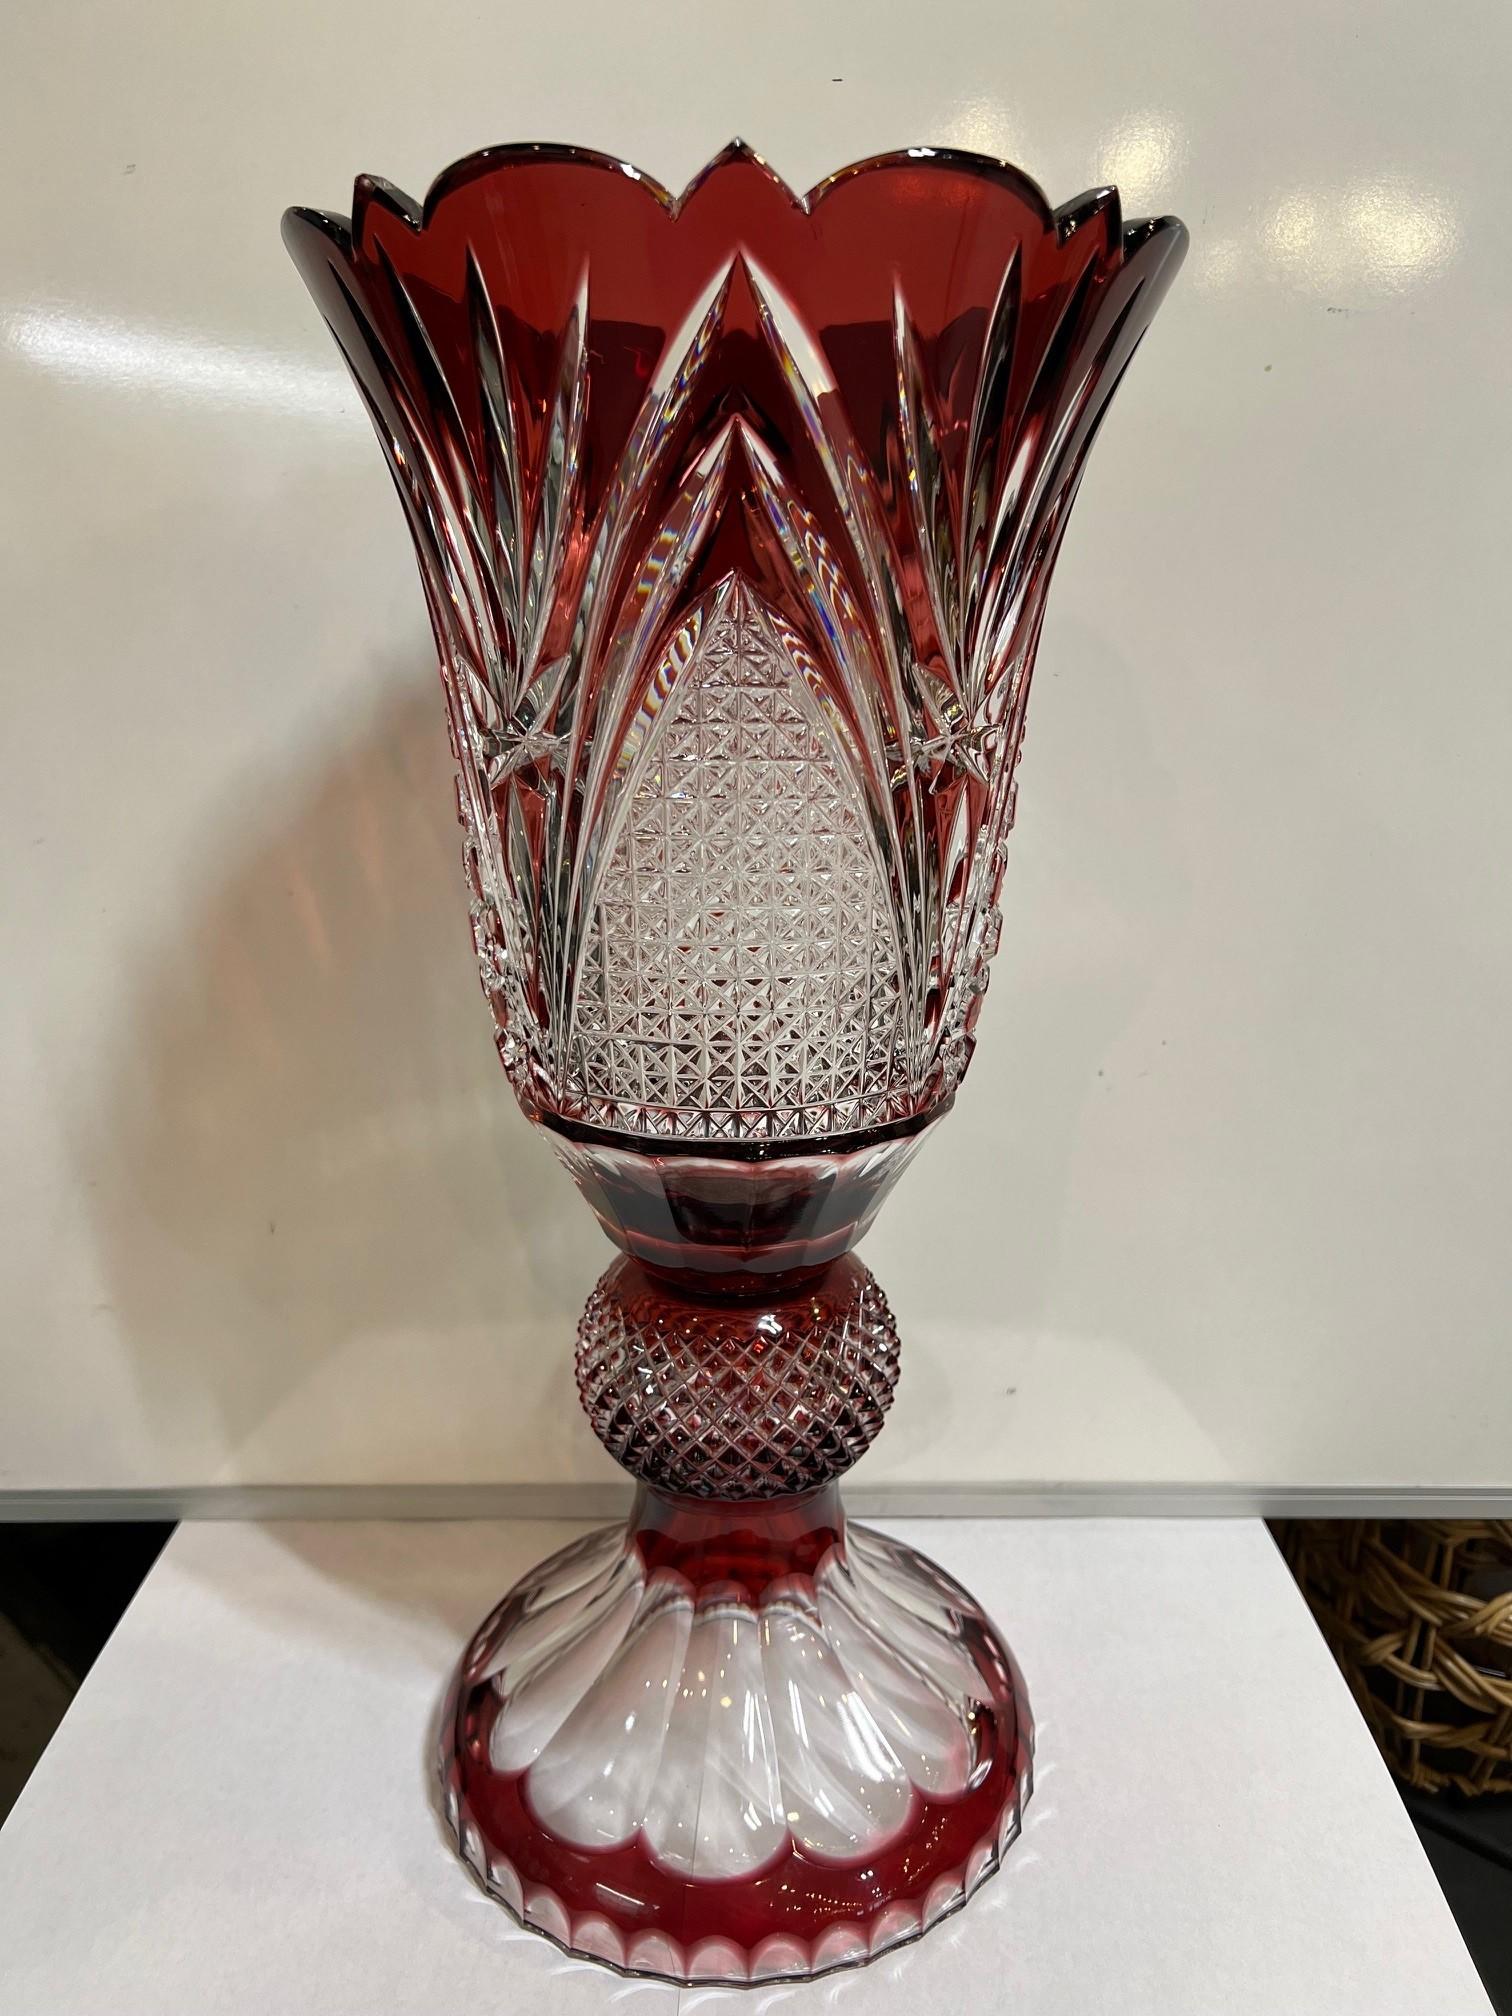 Atemberaubende Vase aus handgeschliffenem Bleikristall mit hohem Sockel, die von den besten tschechischen Glasmachern als Kunstwerk geschaffen wurde. Die Caesar Crystal Company in der Tschechischen Republik vertreibt seit 1861 handgeschliffene